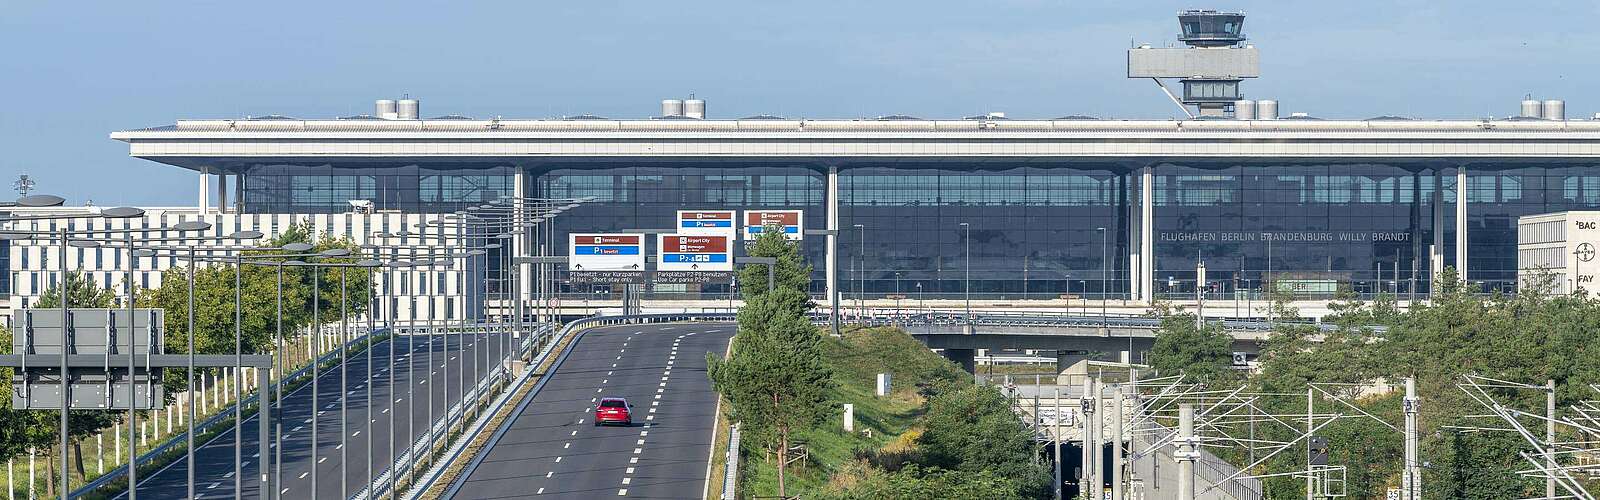 BER Flughafen,
        
    

        
        
            Foto: Flughafen Berlin Brandenburg GmbH